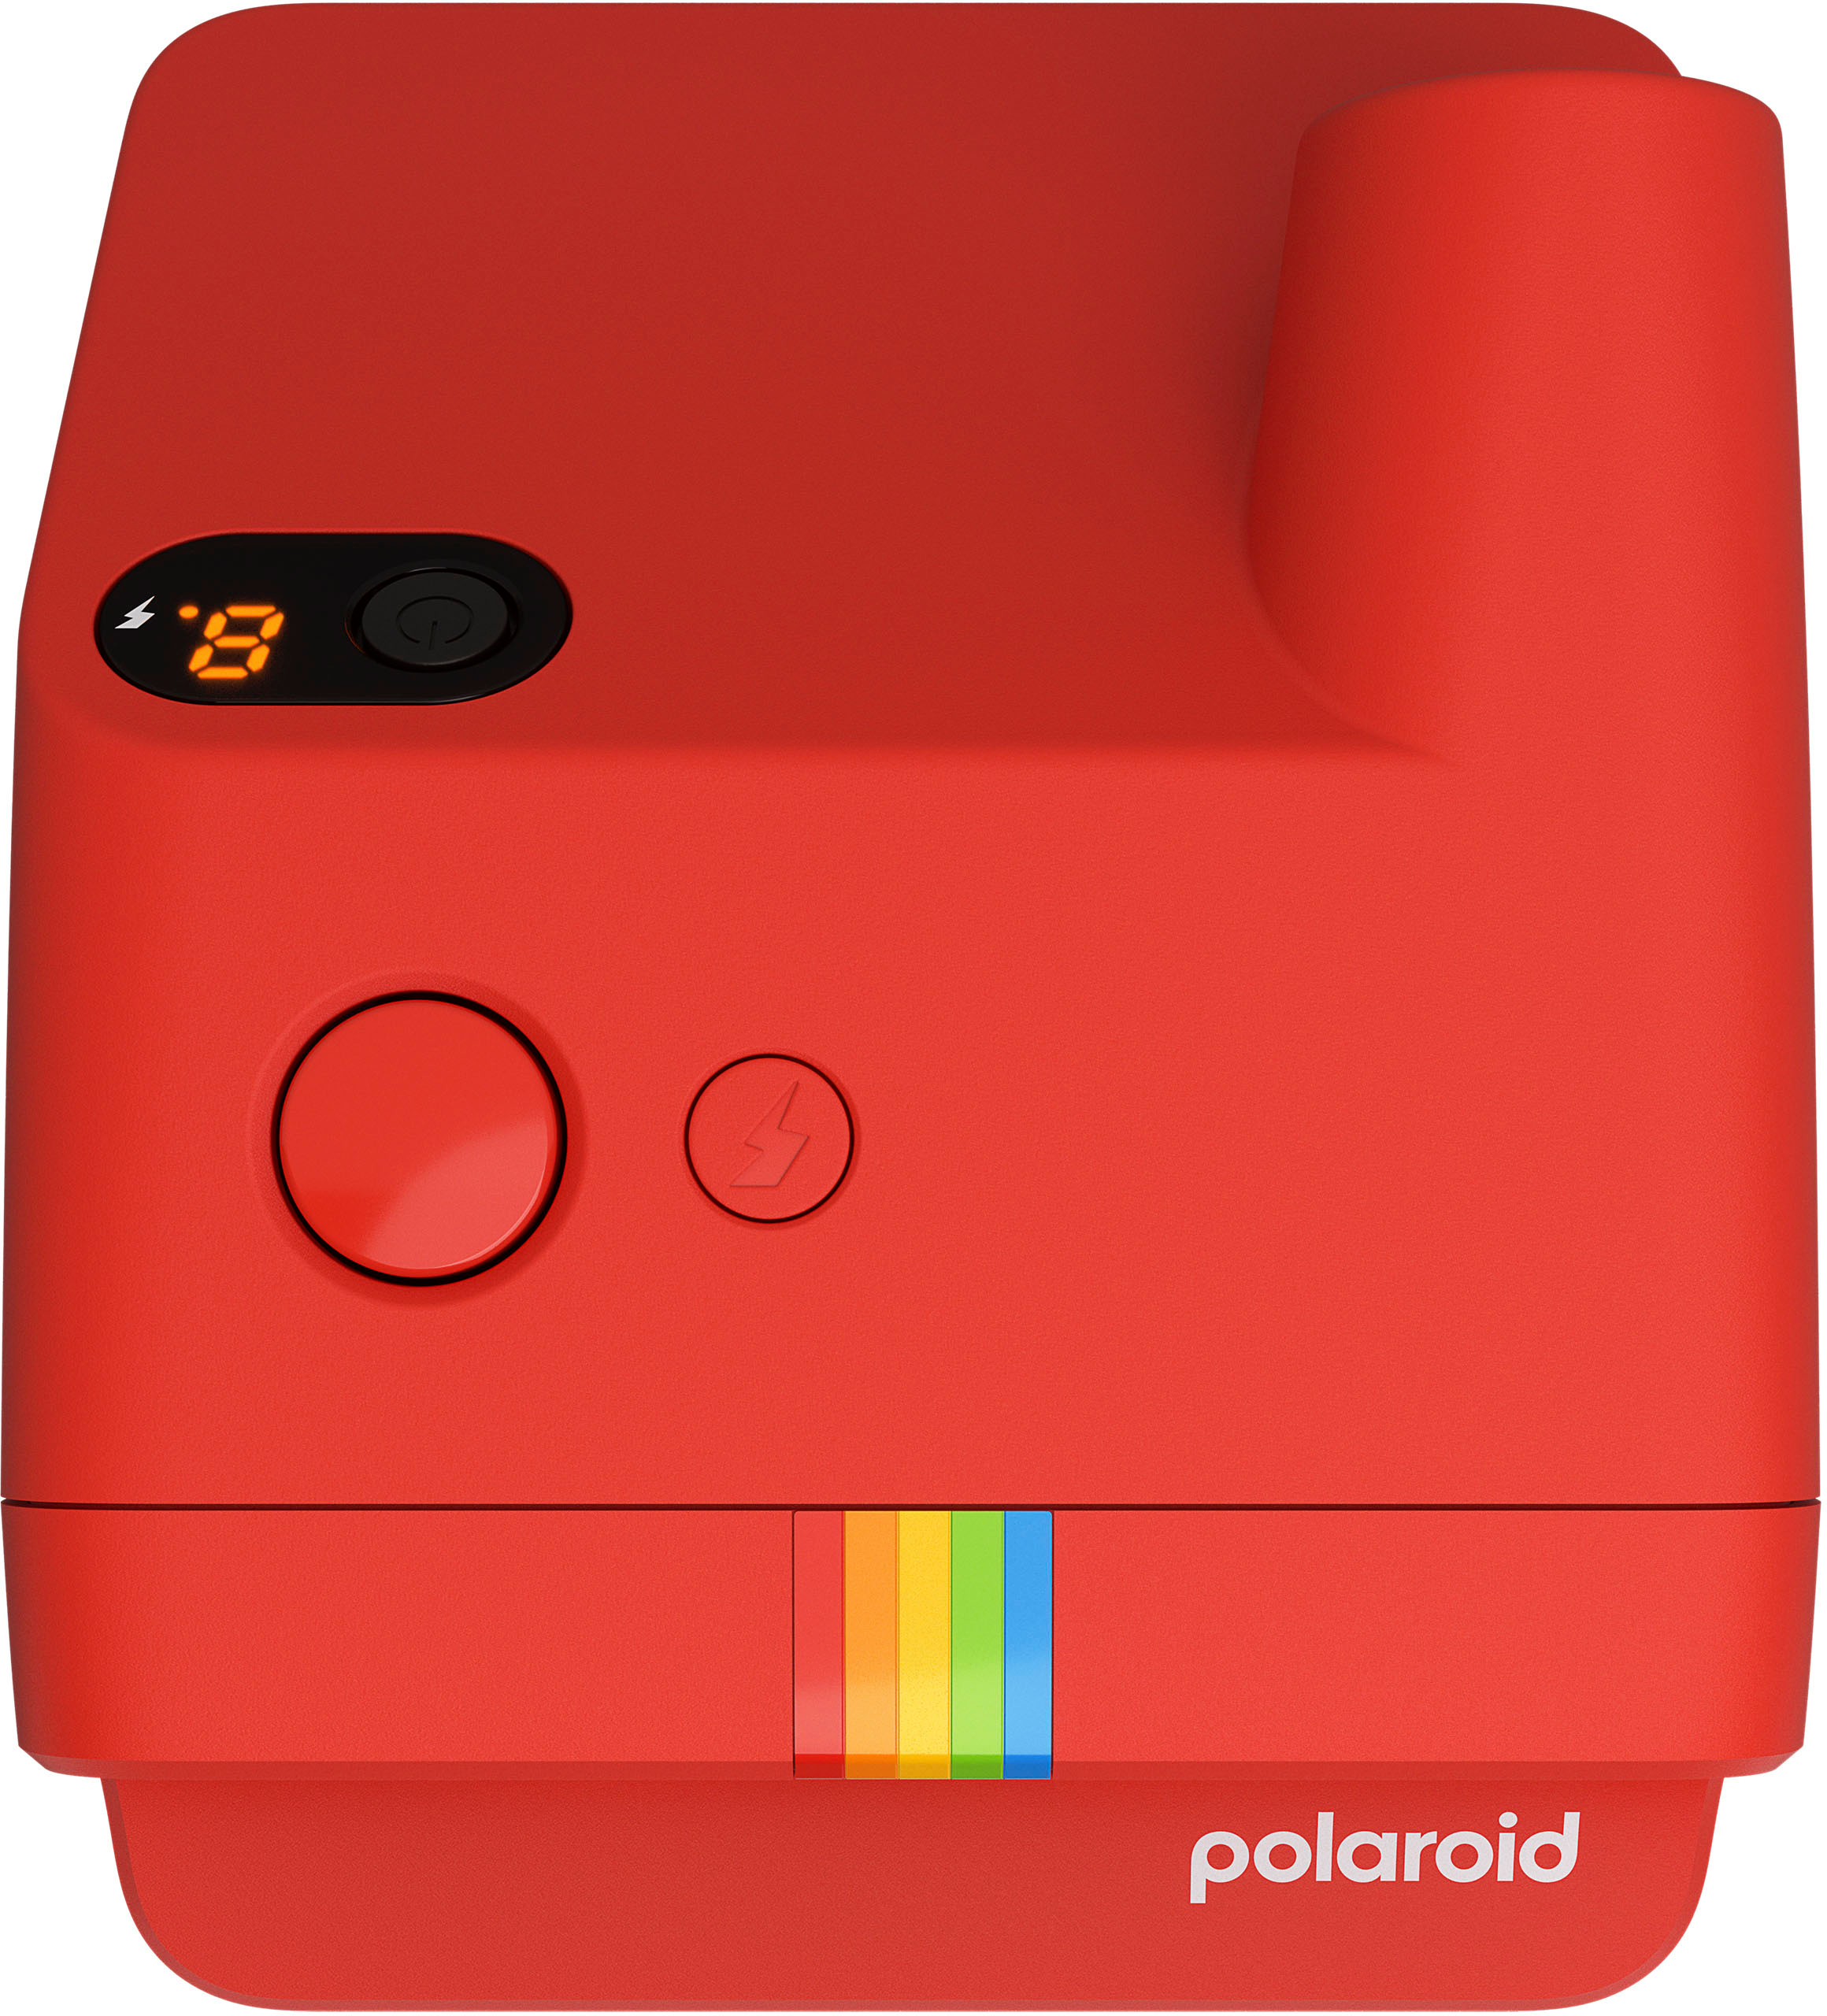 Polaroid Go Instant Camera (Red) - Filter Set – 8storeytree